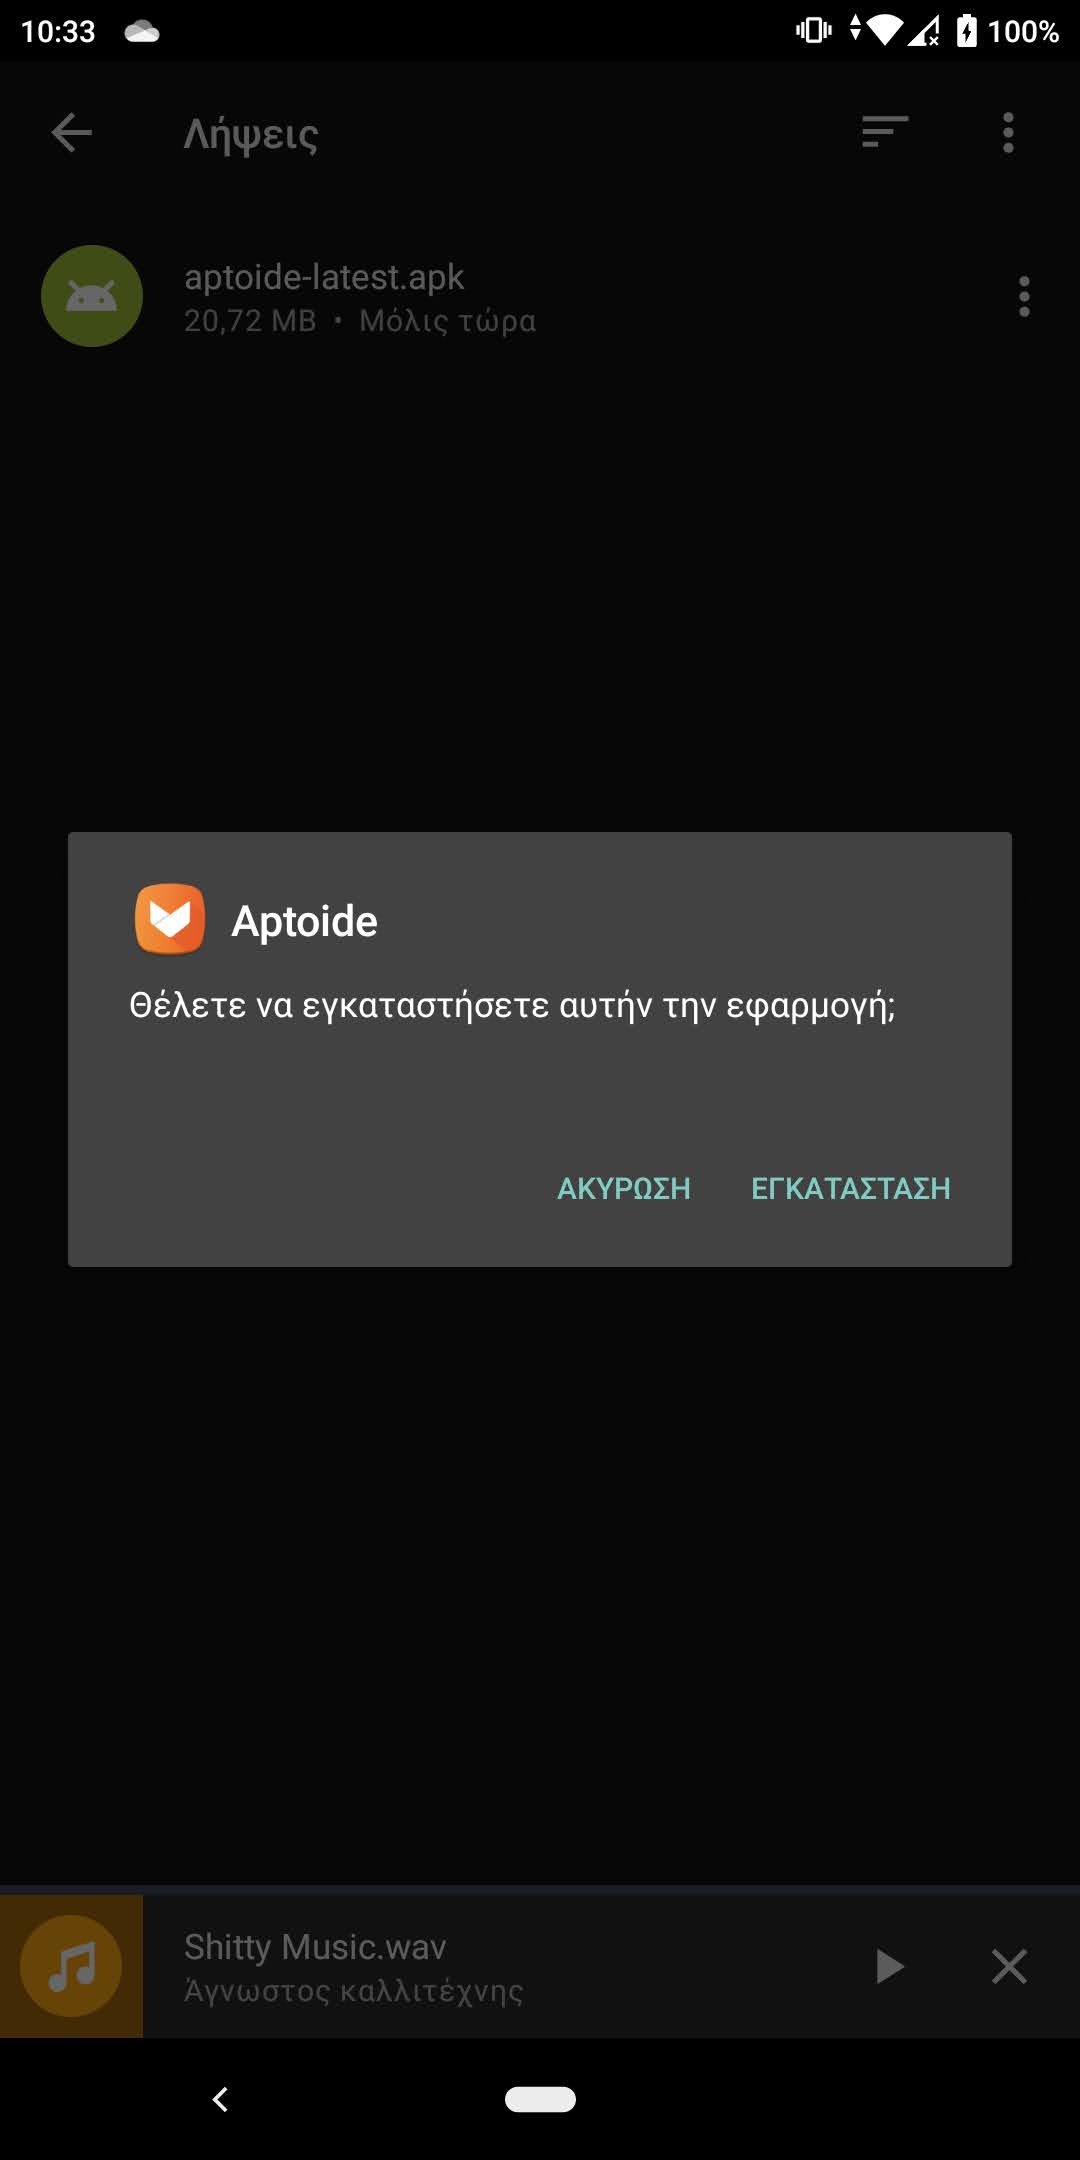 Aptoide: Εγκατάσταση Android εφαρμογών εκτός Play Store